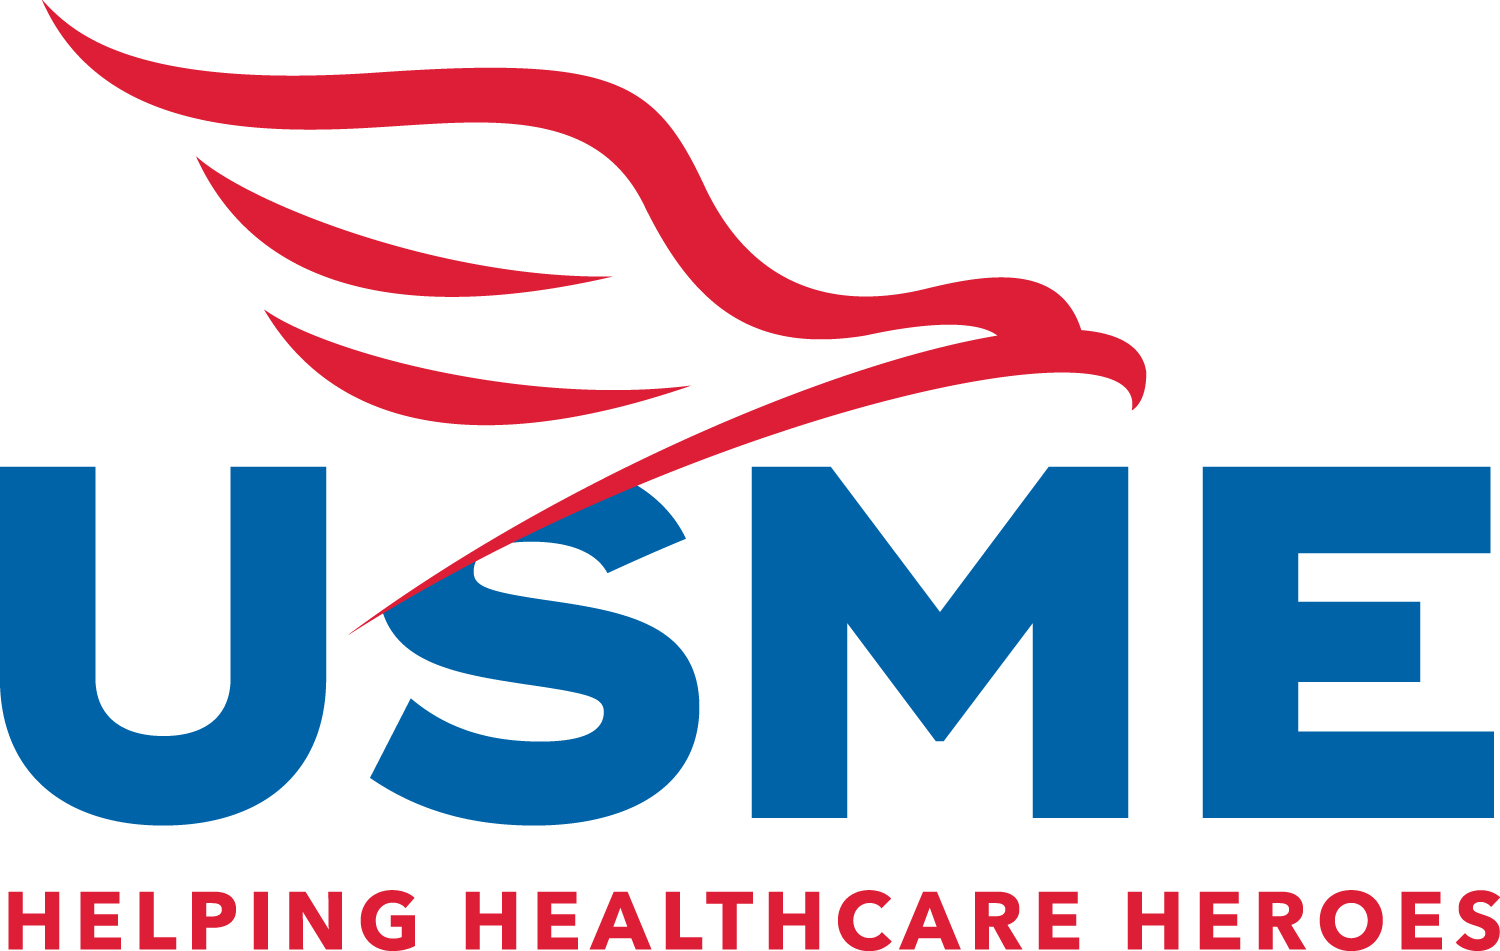 US Med-Equip logo